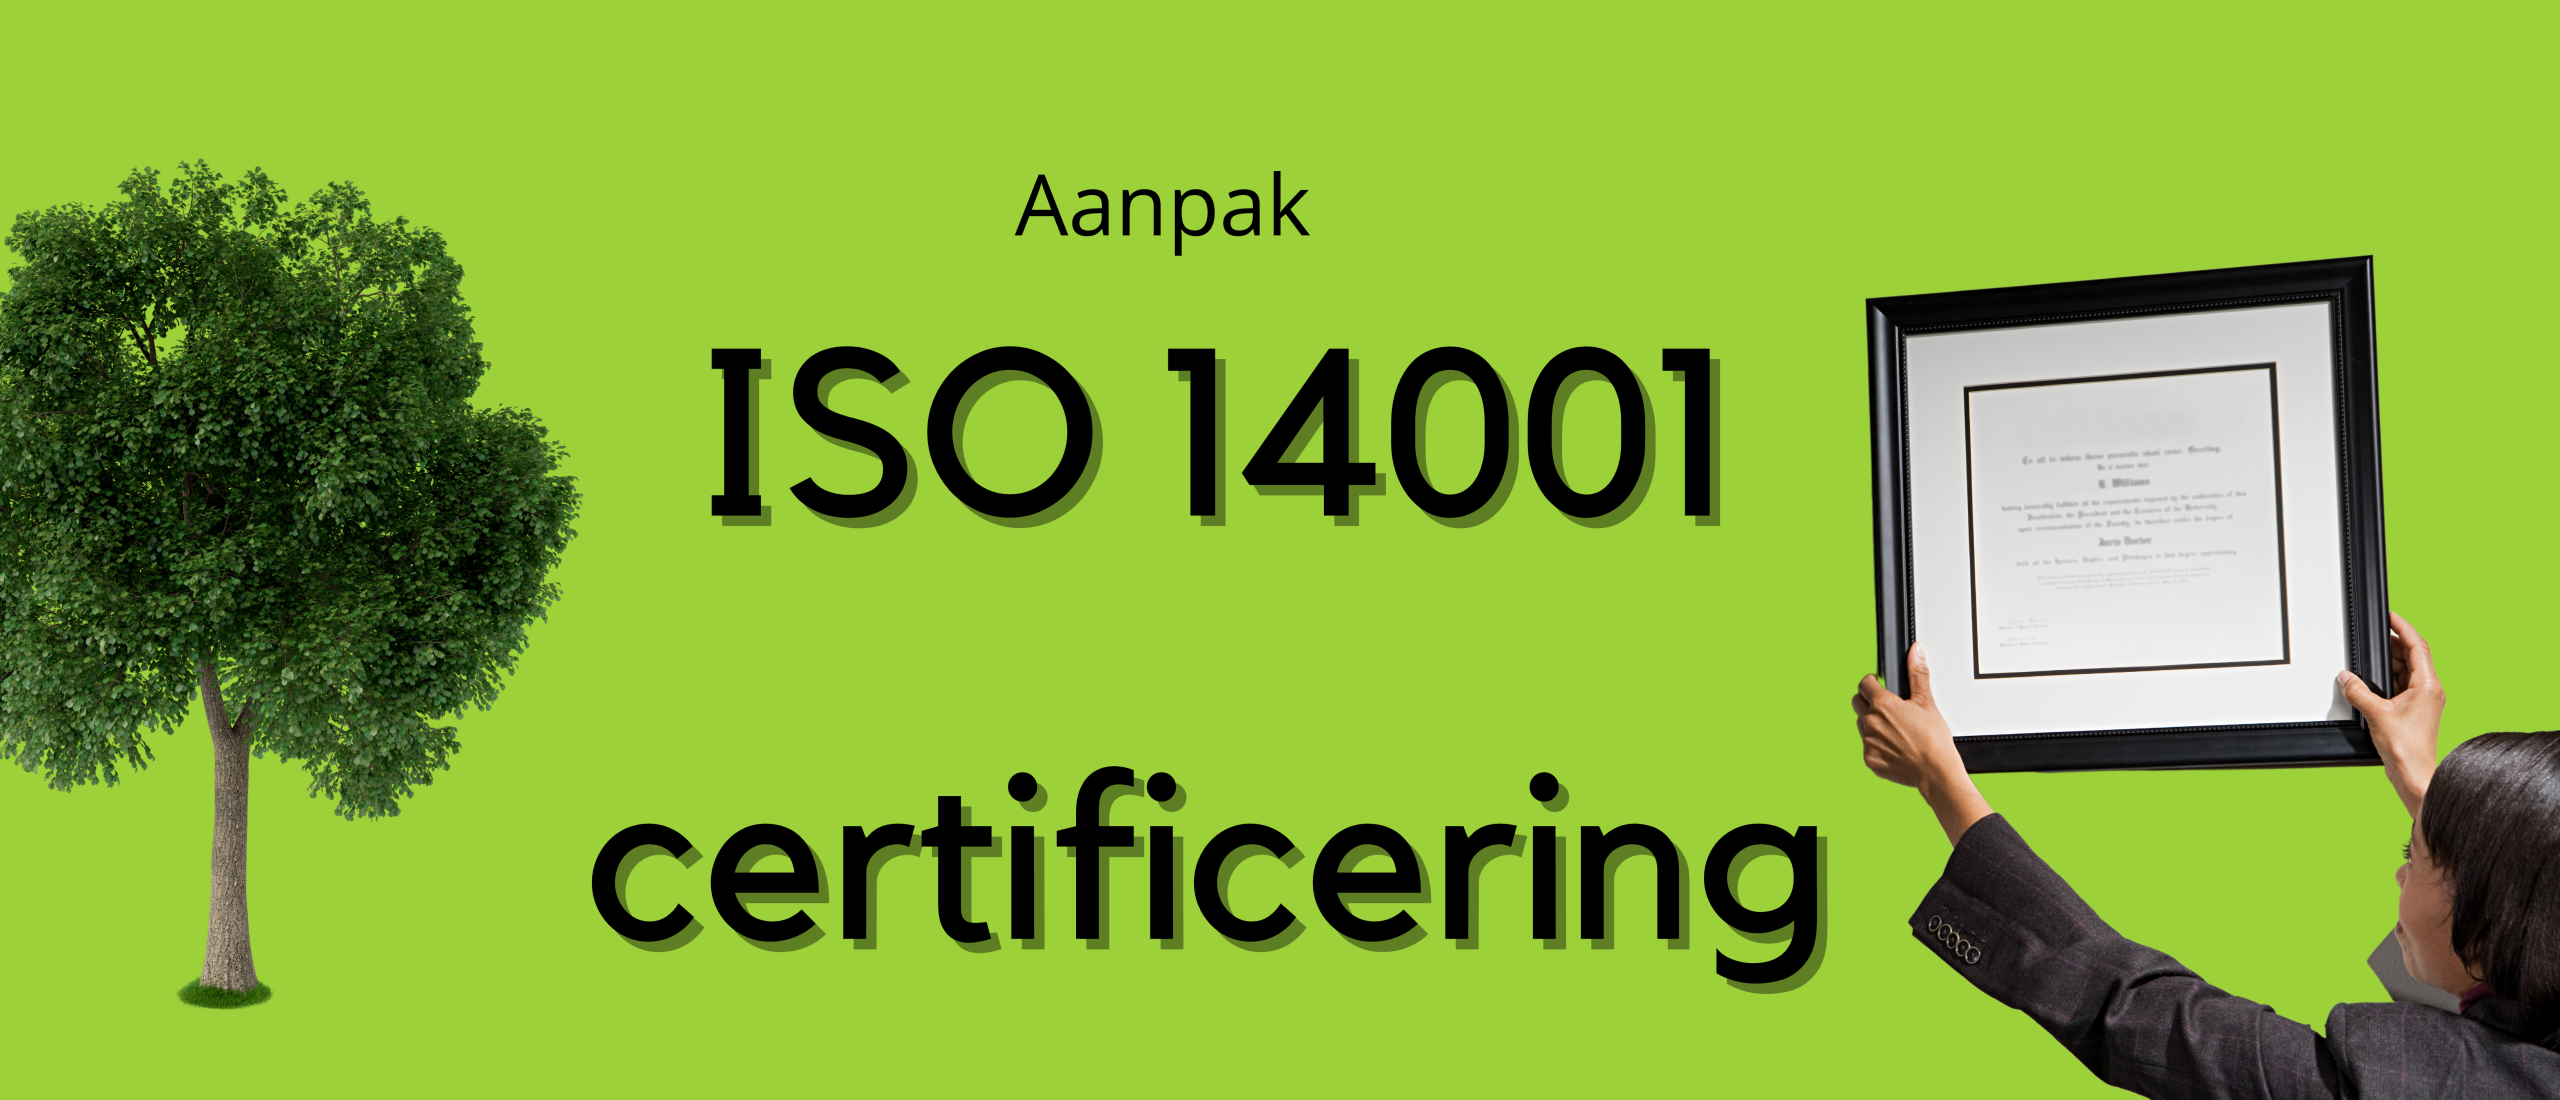 ISO 14001 certificering: Hoe pak ik dat aan?